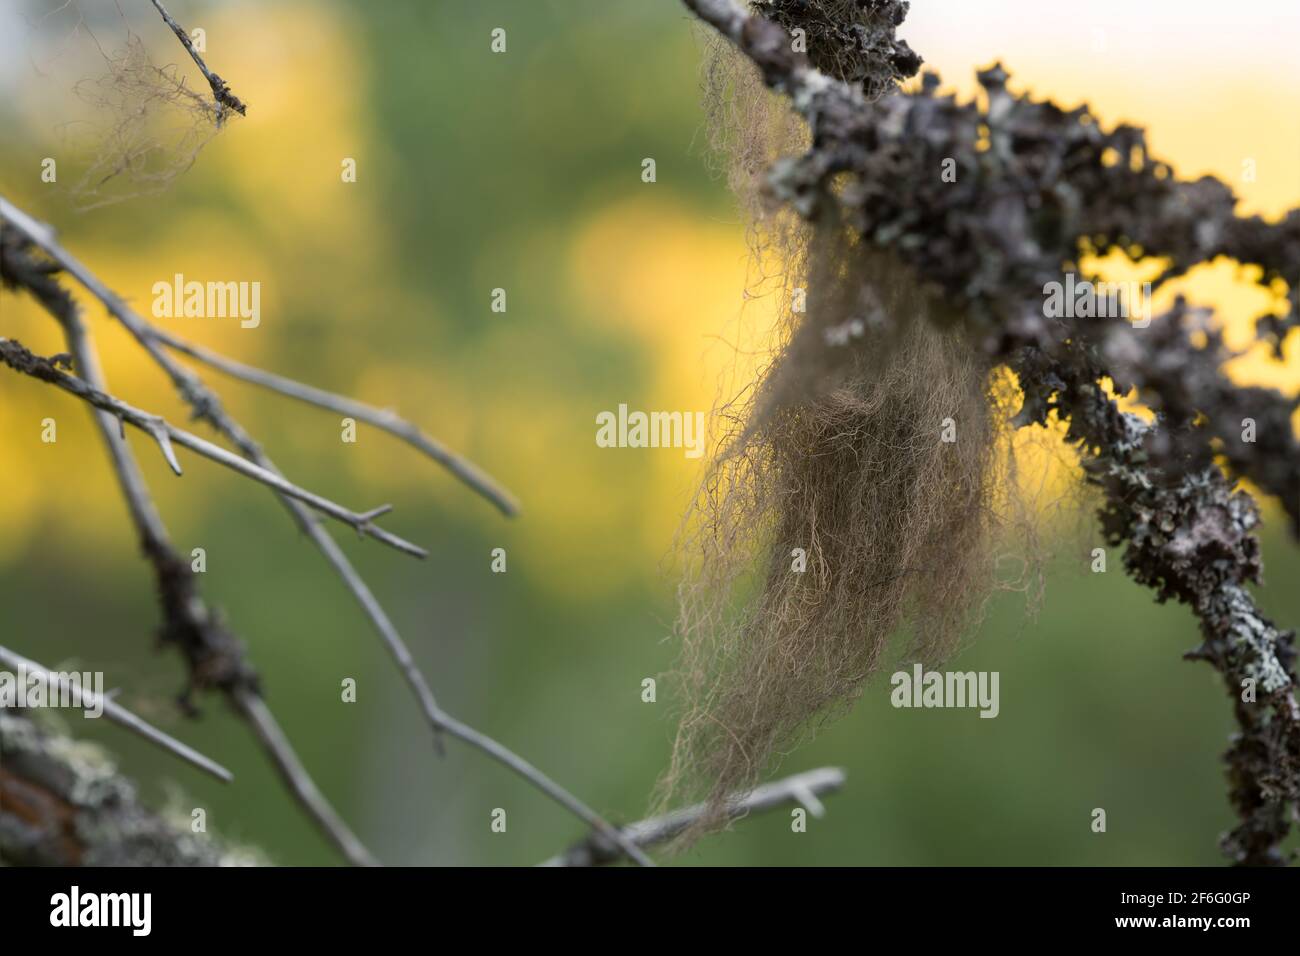 Lichen, Bryoria capillaris on branch Stock Photo